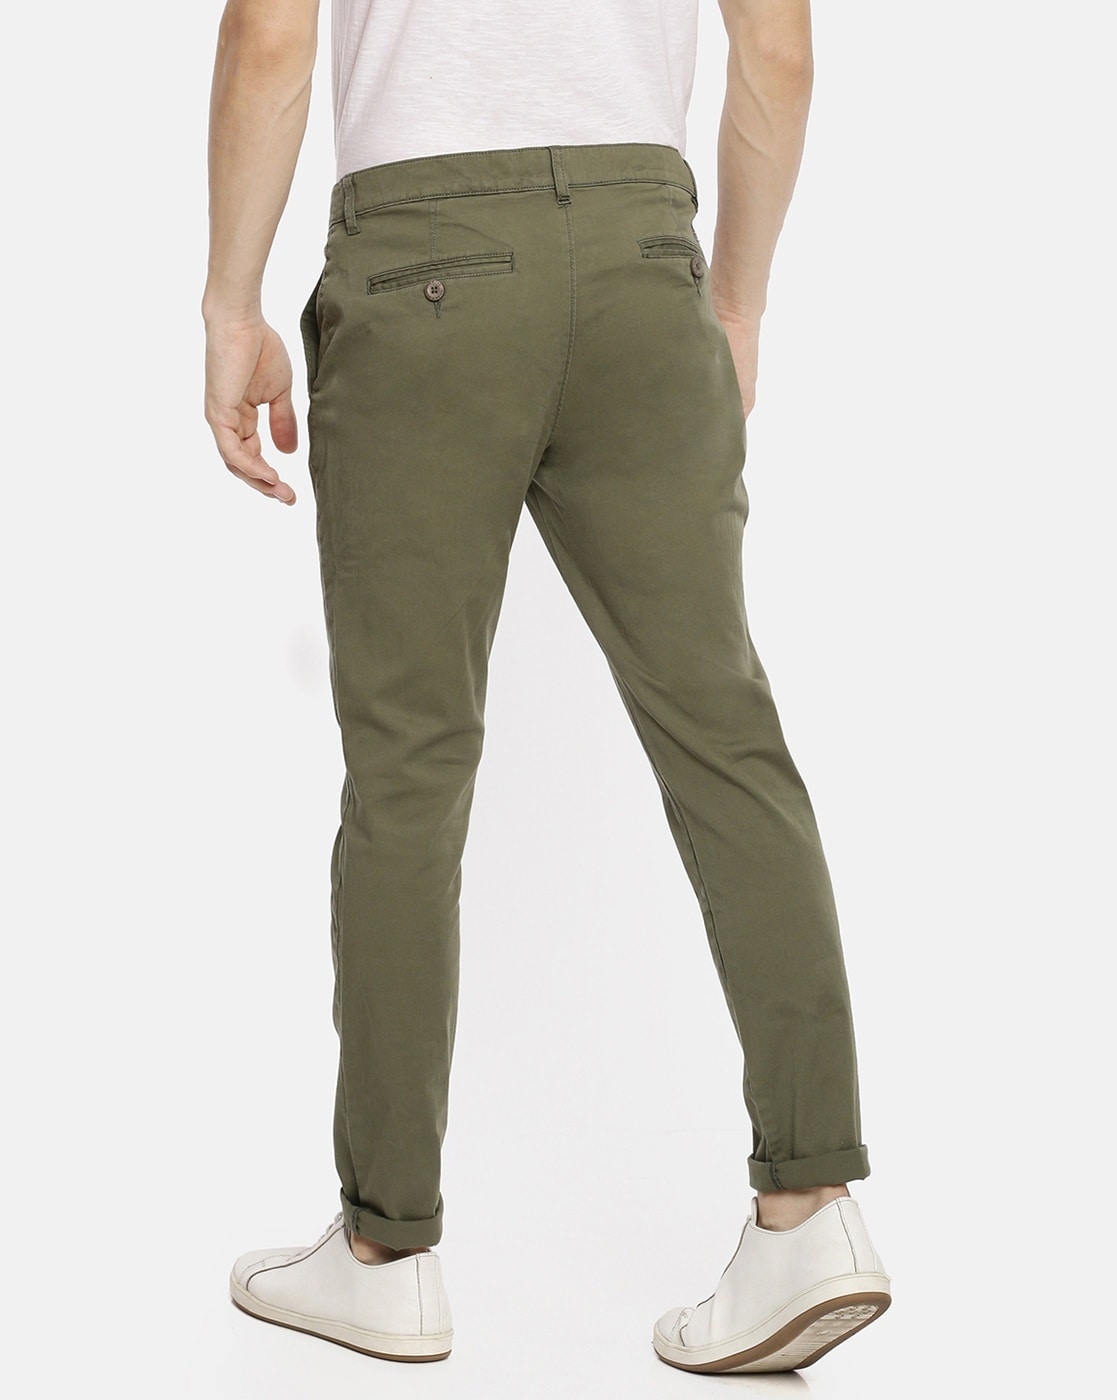 Zara Man Formal Trousers | TBI Wholesale